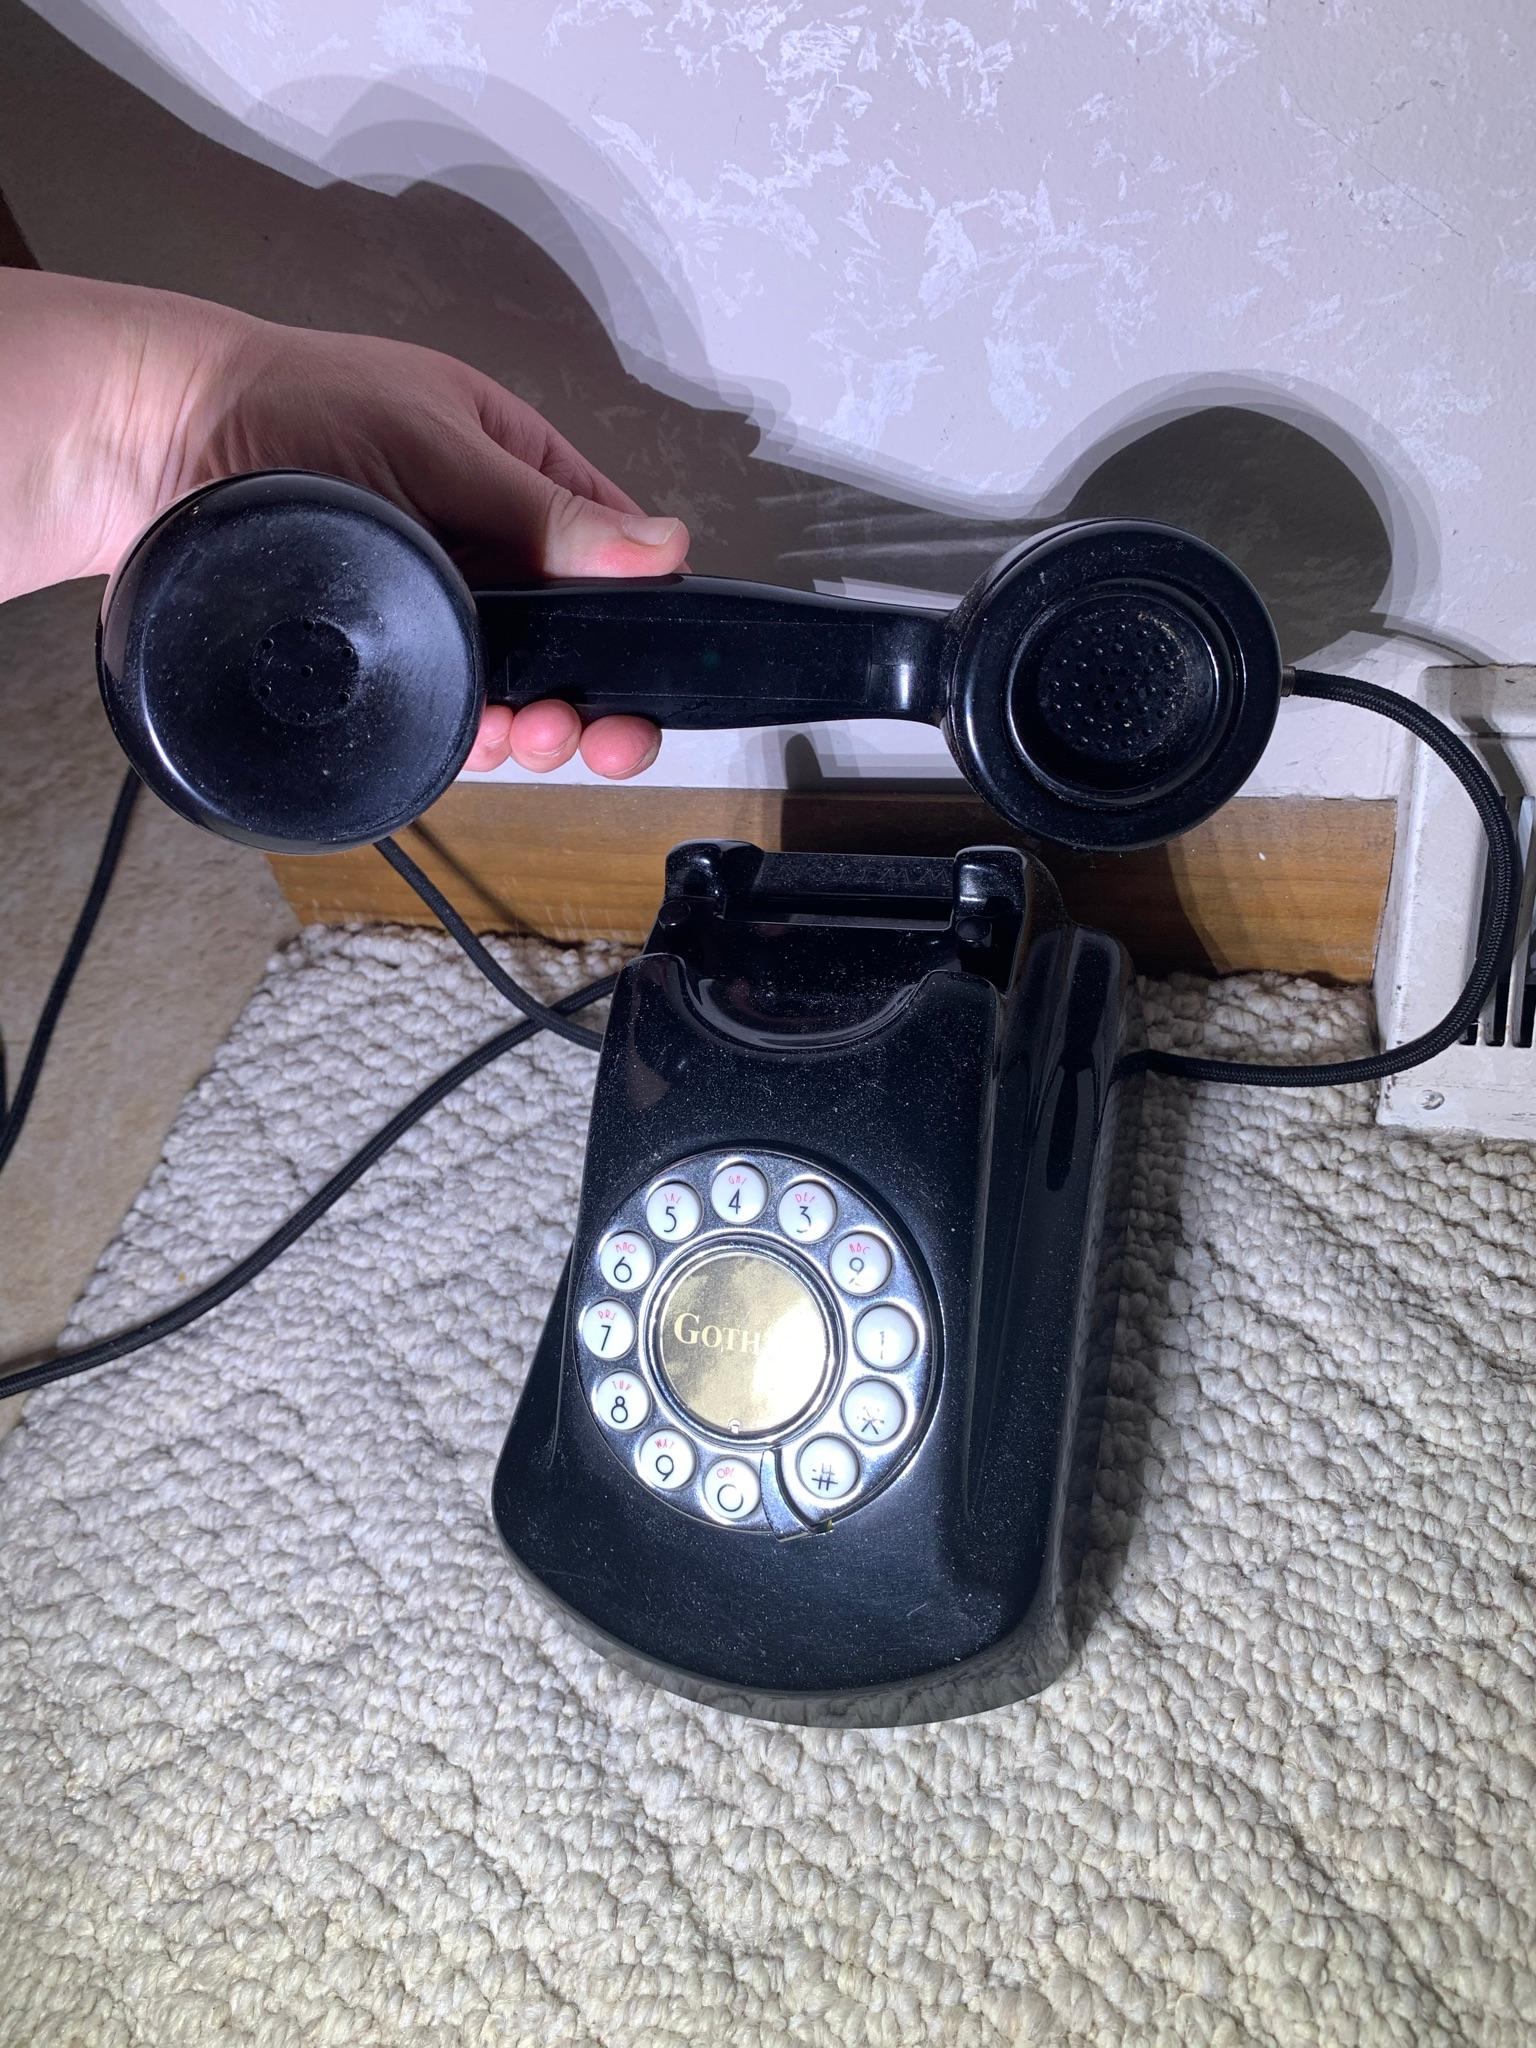 Pair of Vintage Style Phones